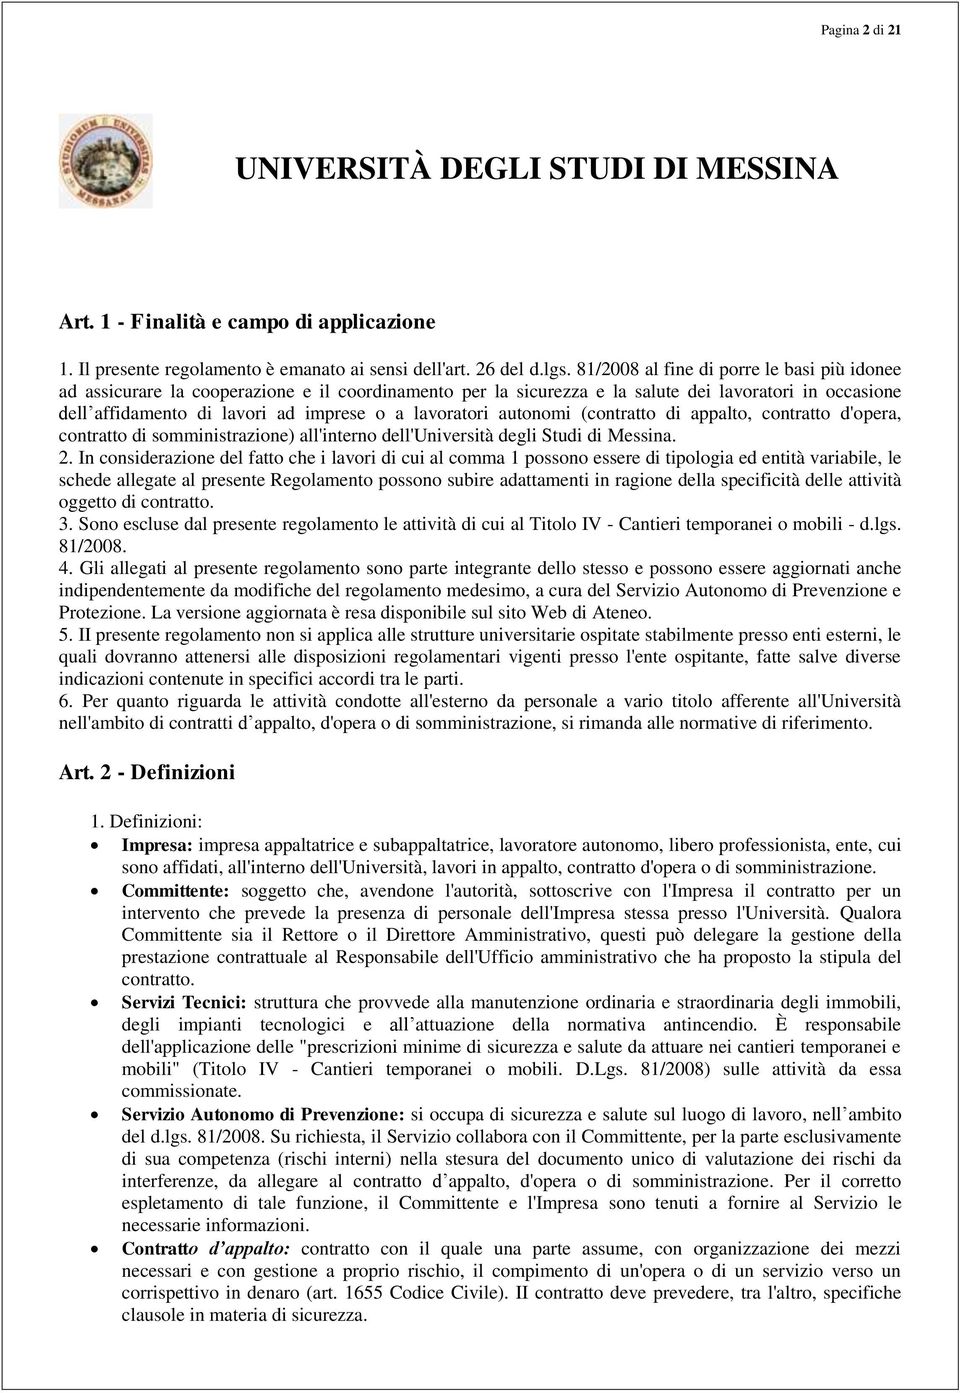 lavoratori autonomi (contratto di appalto, contratto d'opera, contratto di somministrazione) all'interno dell'università degli Studi di Messina. 2.